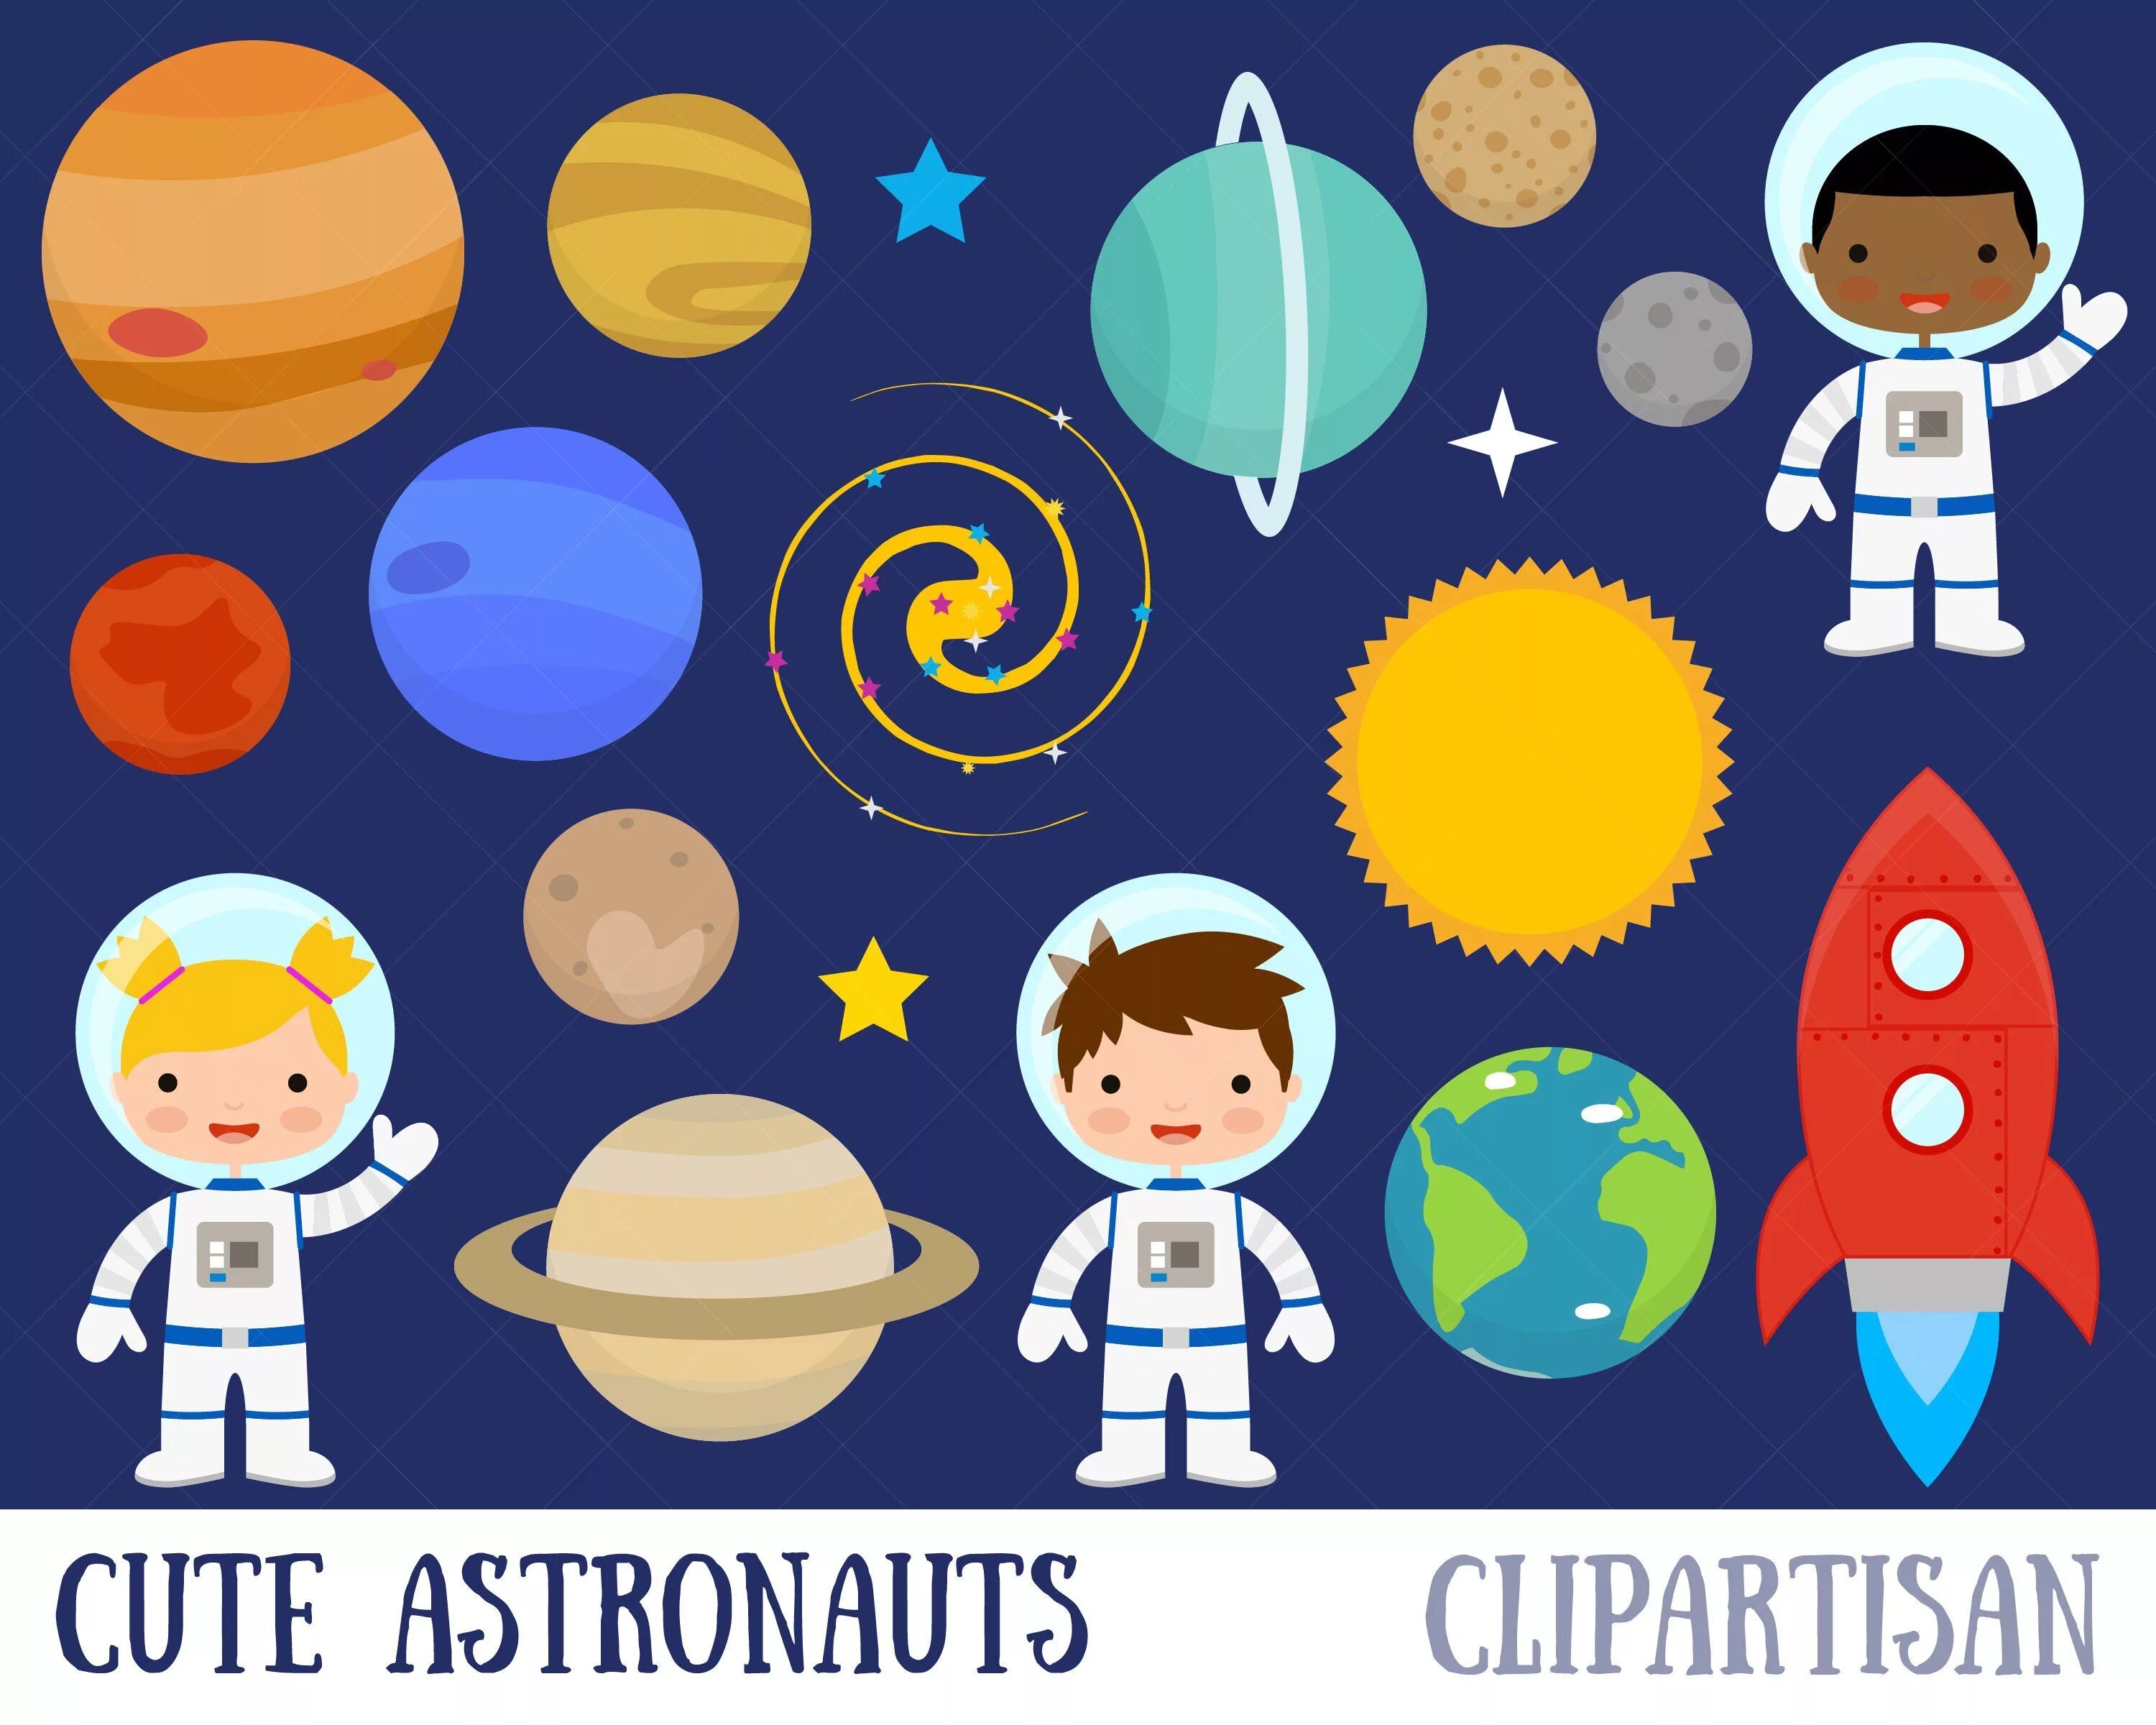 Космонавт цветной. Космонавт для детей. Аппликация планеты. Изображение Космонавта для детей. Космонавт иллюстрации для детей.